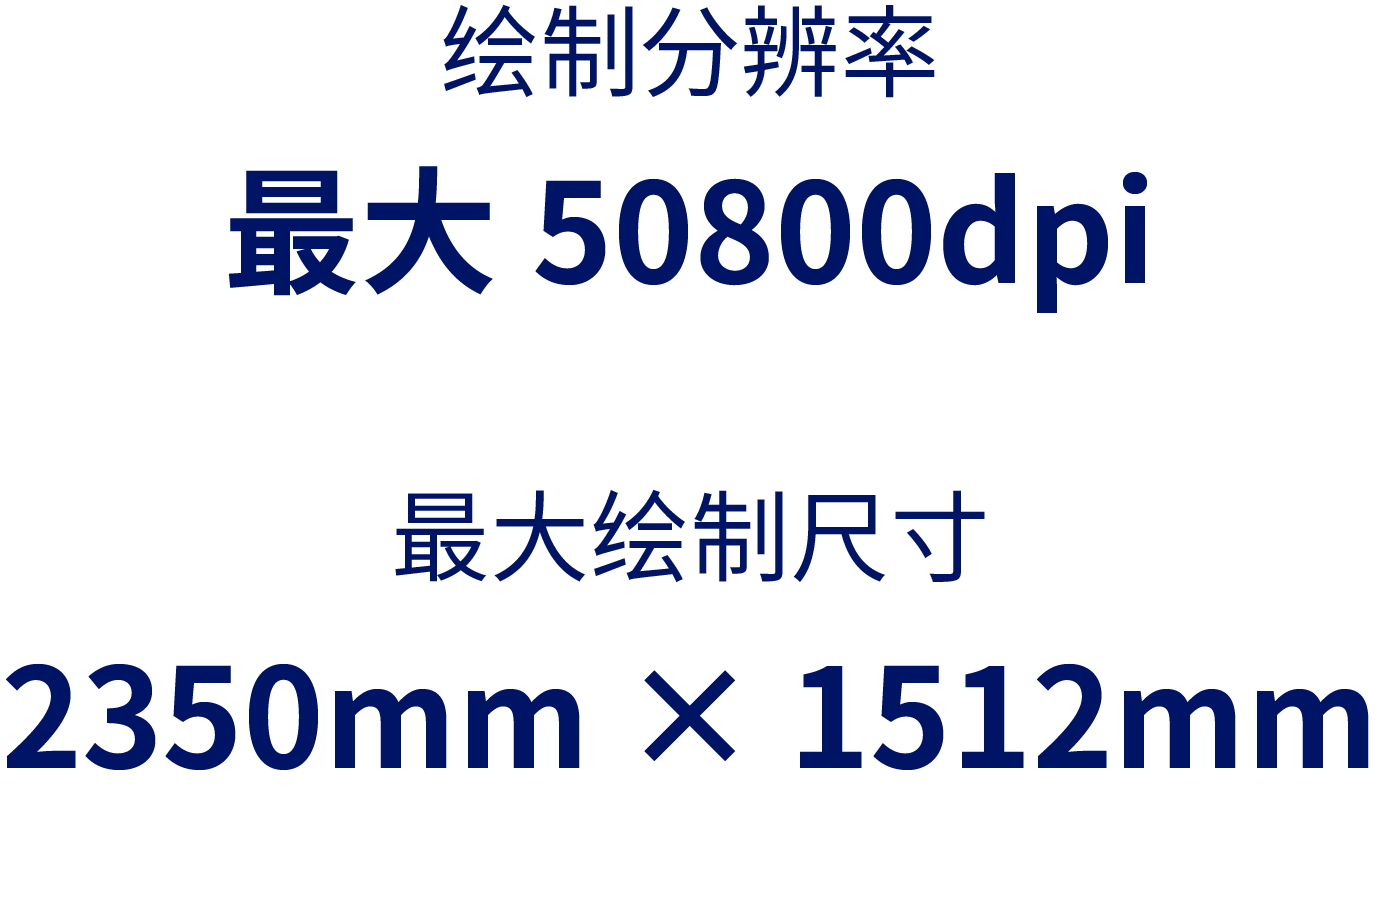 绘制分辨率：最大50800dpi／最大绘制尺寸 ：2350mm × 1512mm